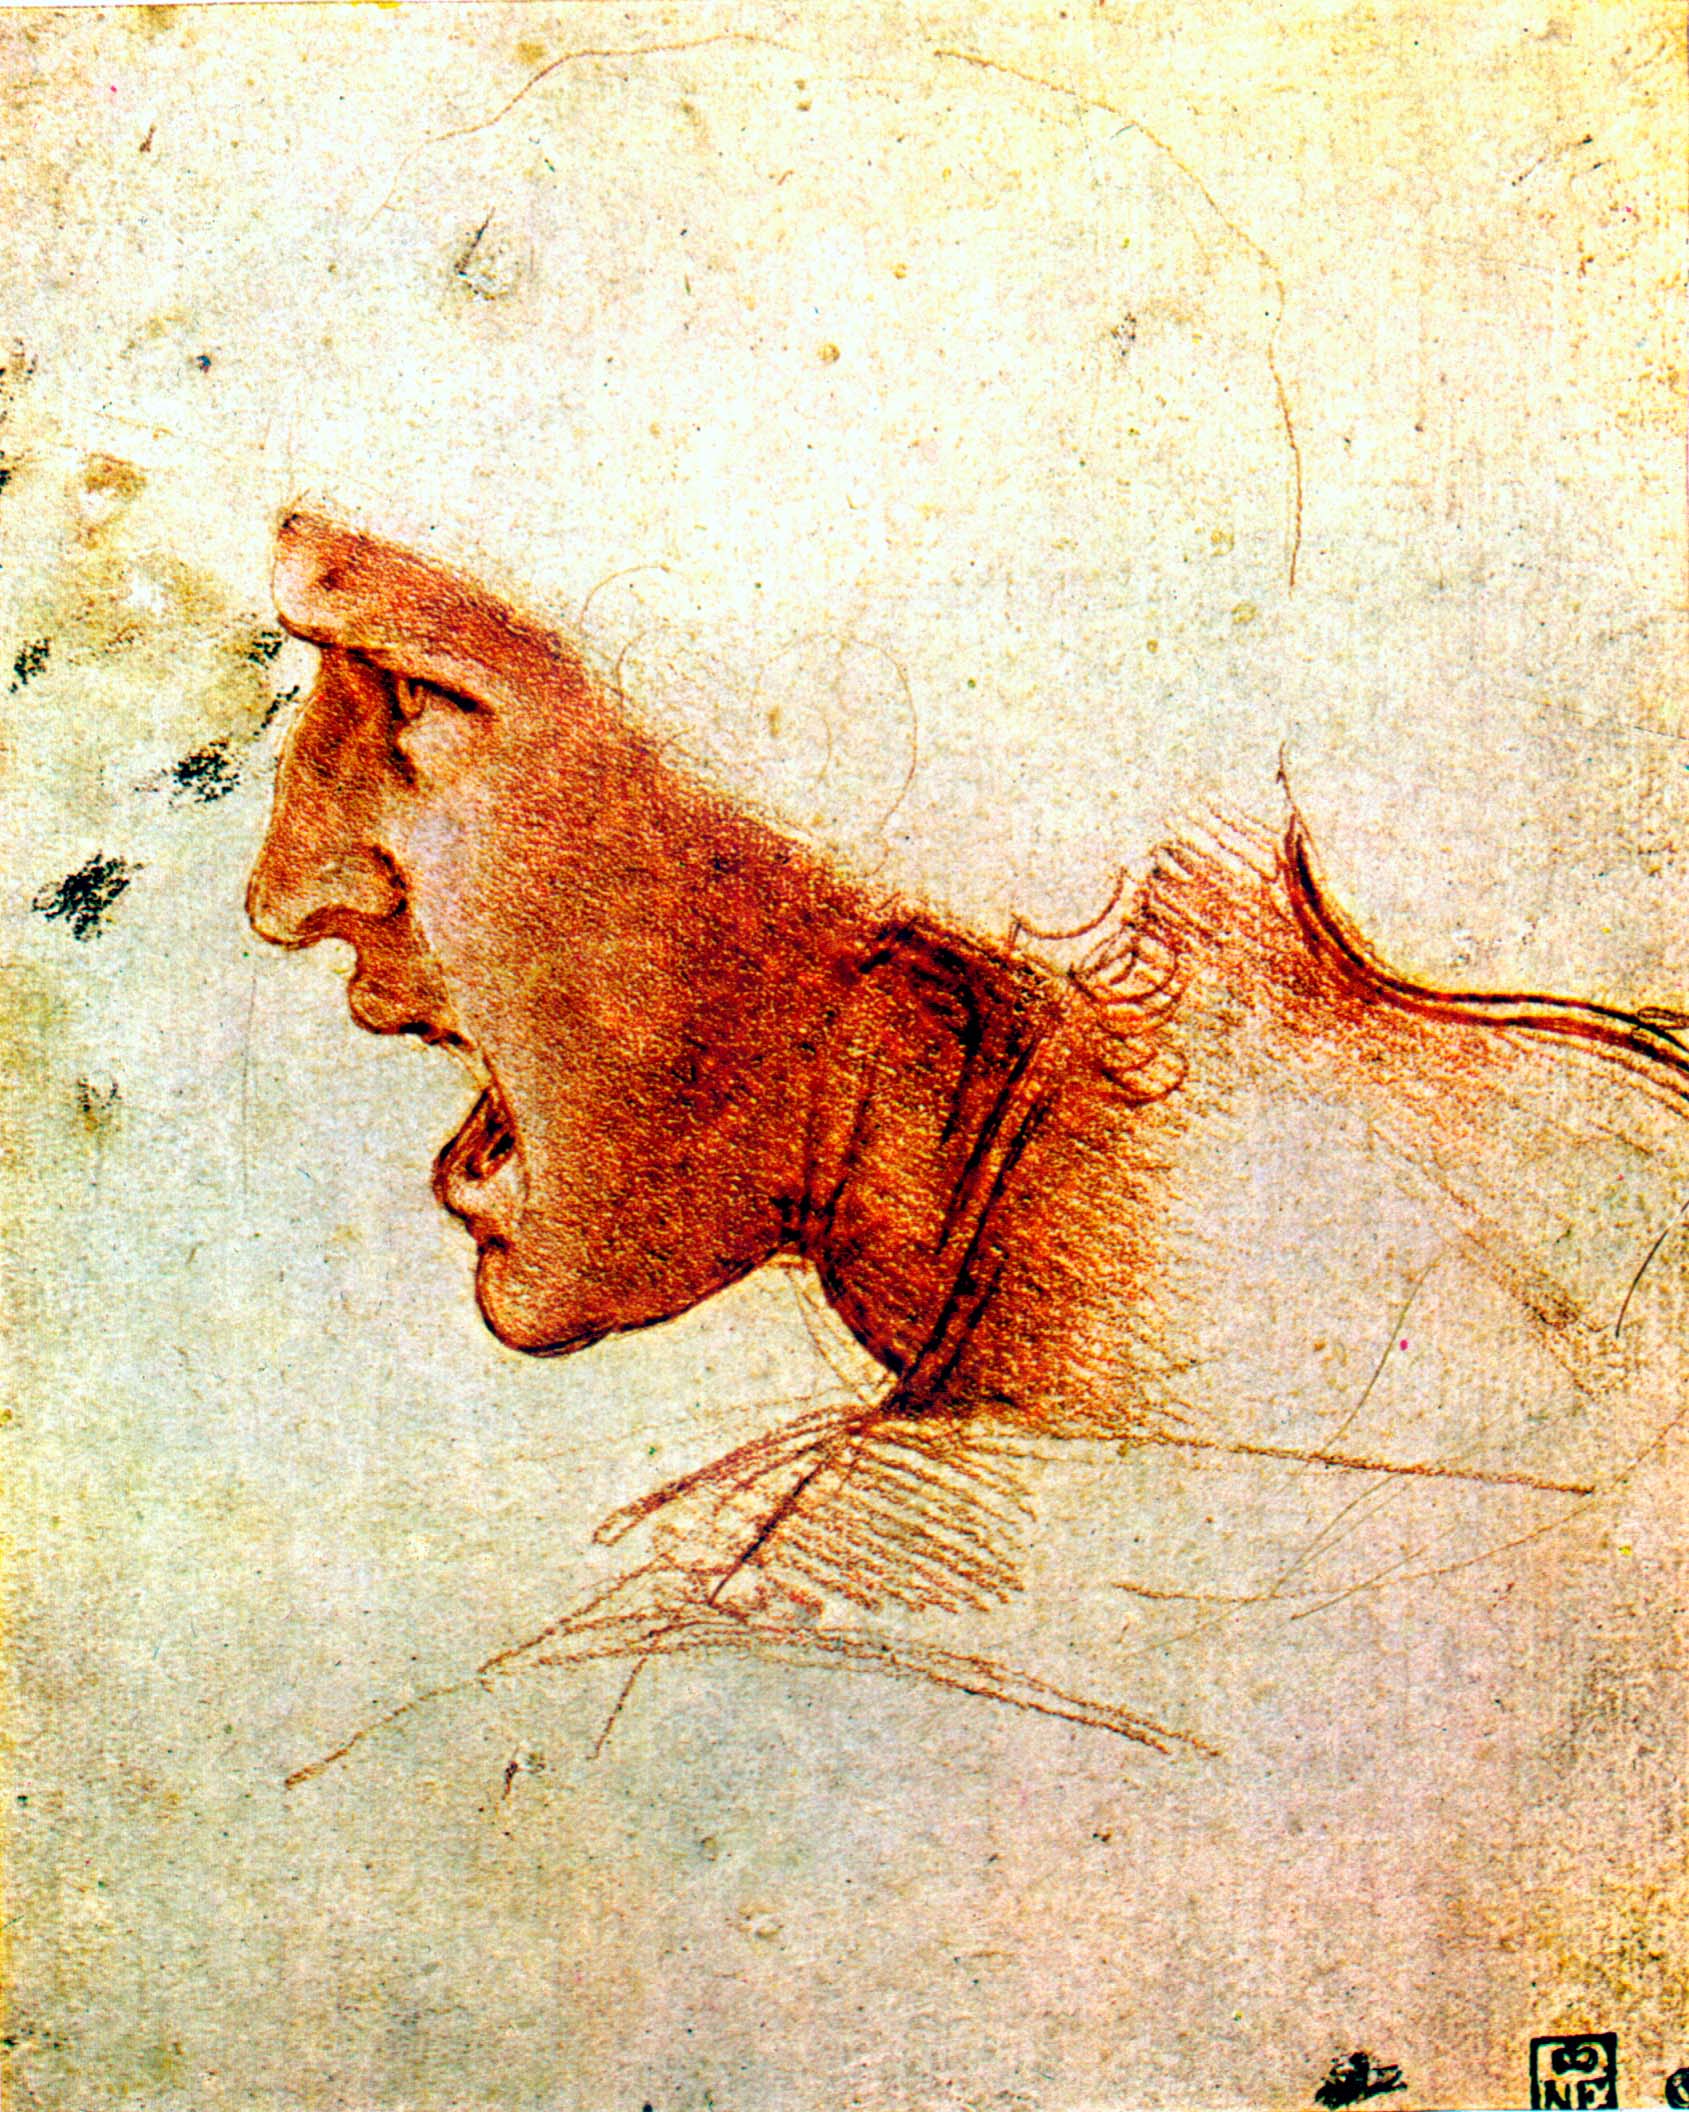 Леонардо да Винчи. "Профиль кричащего человека". Эскиз к "Битве".